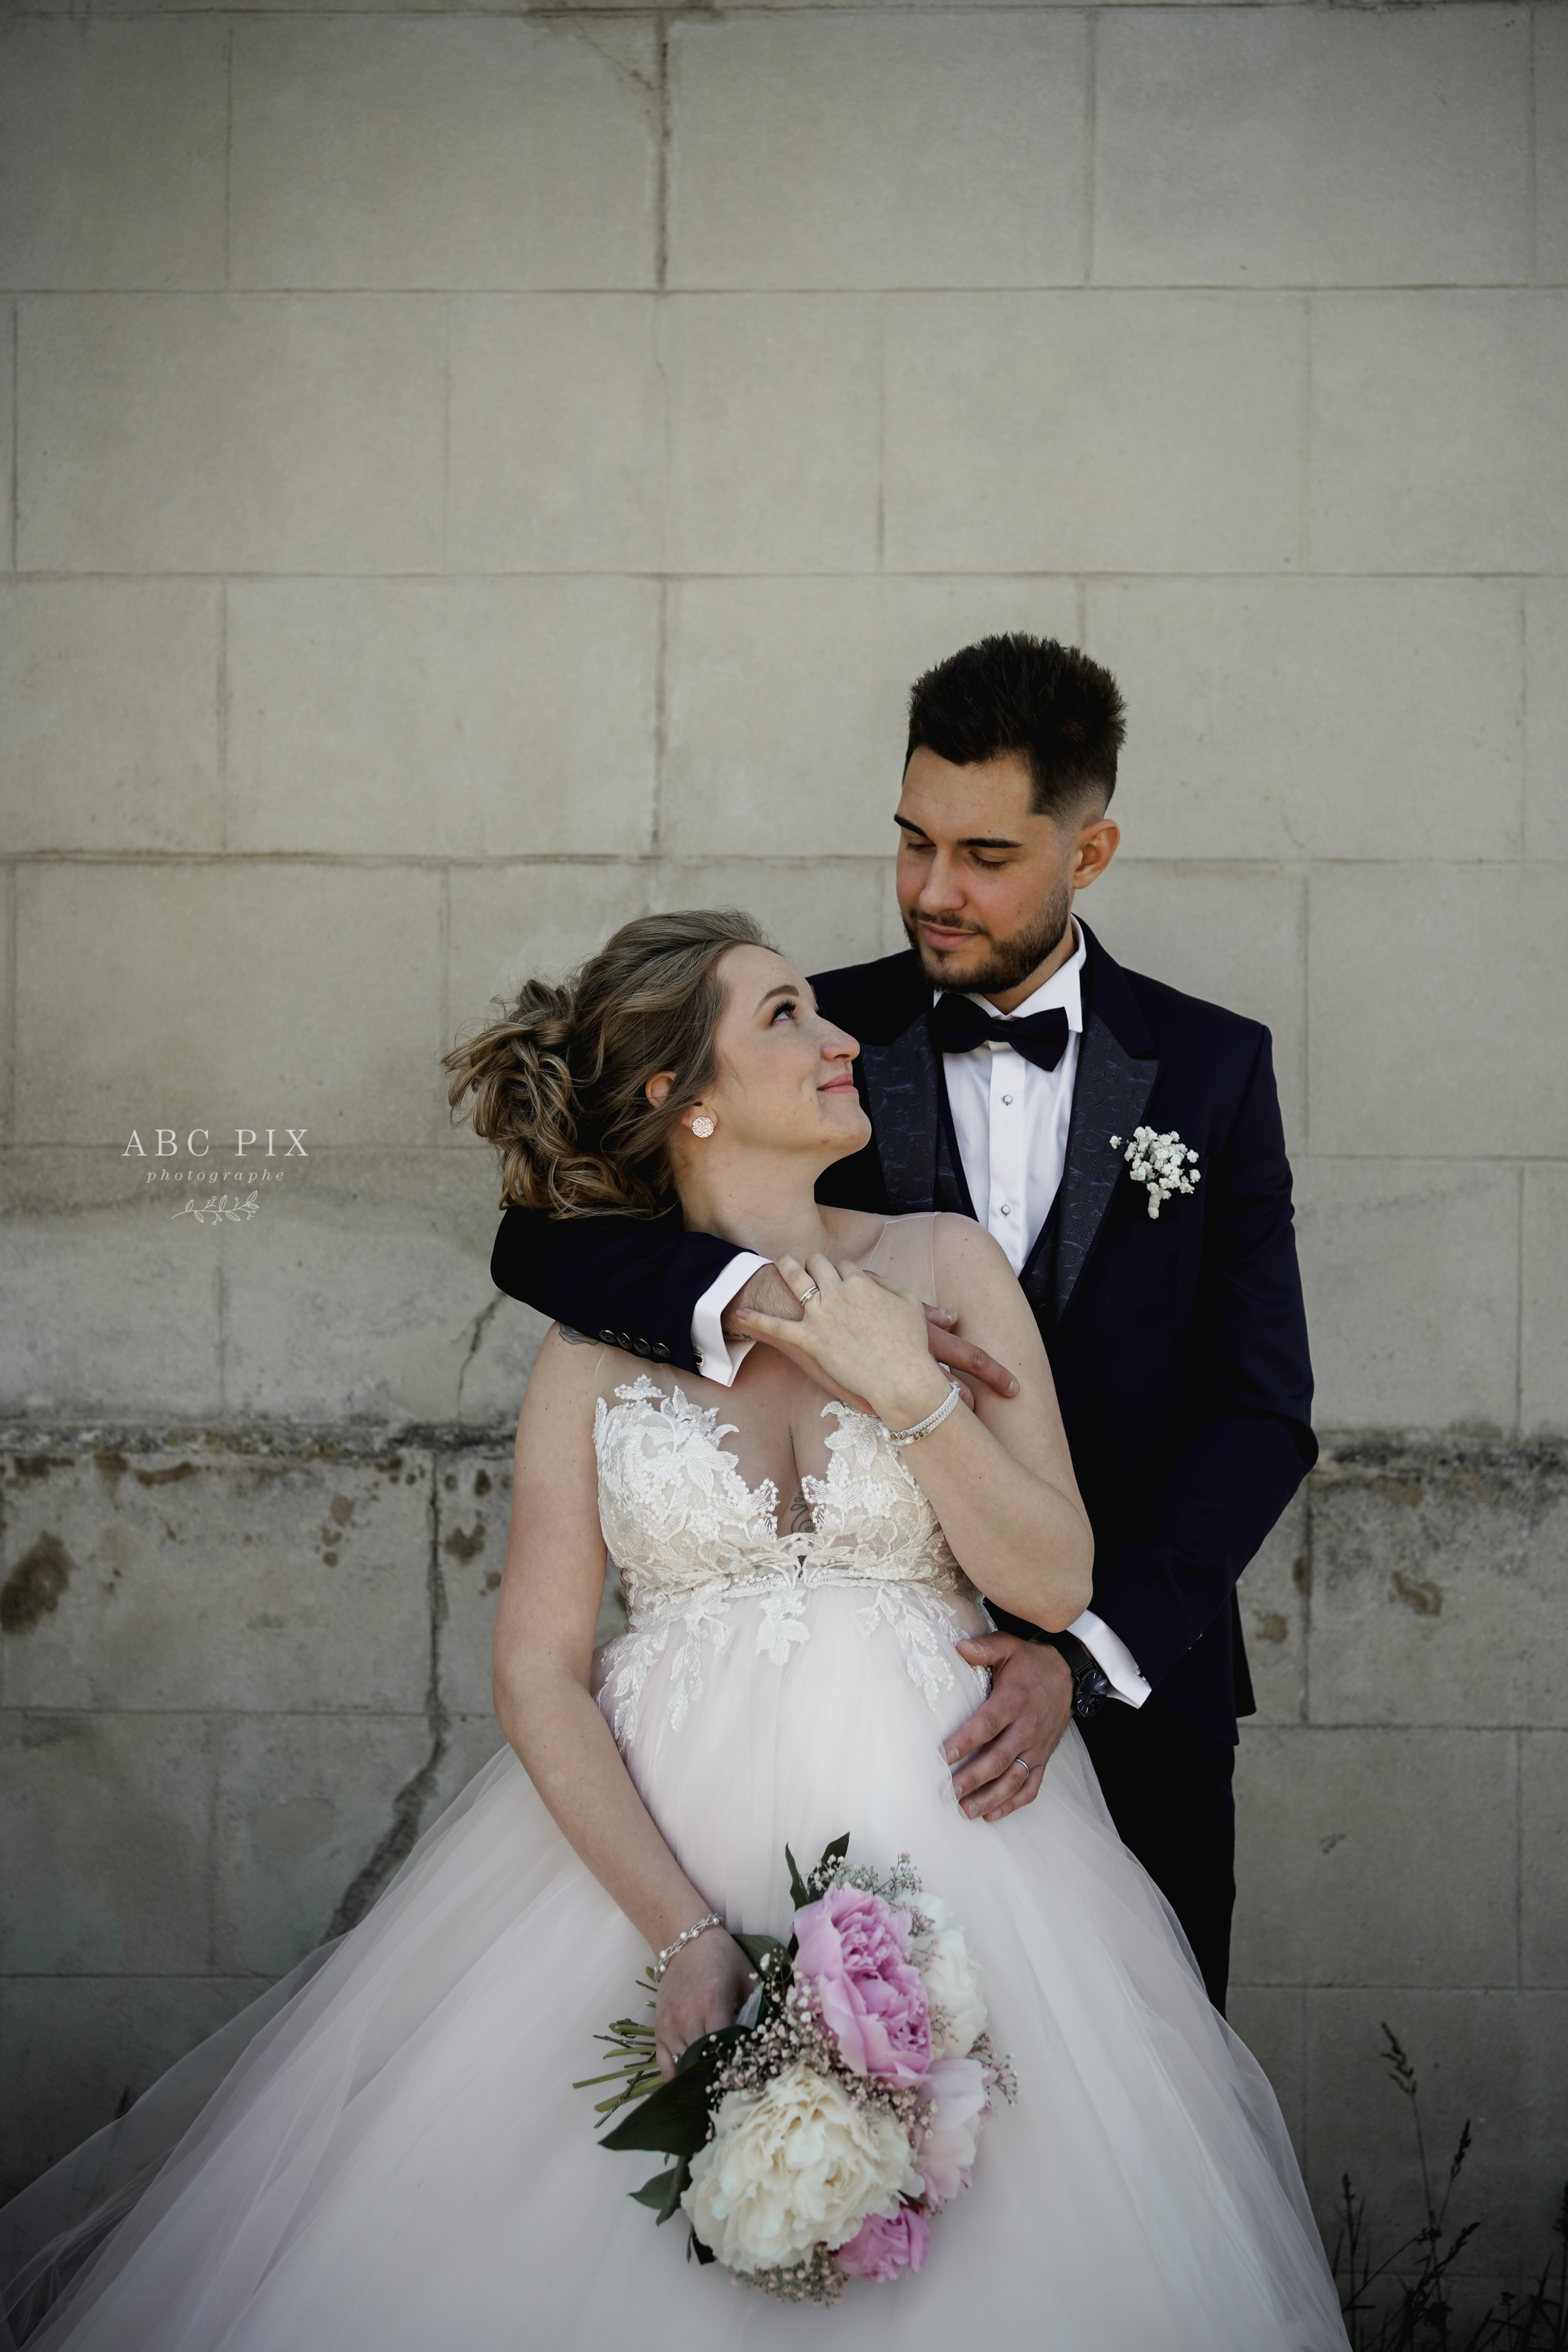 photographe-alsace-reportage-photo-mariage-mariée-marié-mariés-costume-robe-portrait-couple-abc-pix